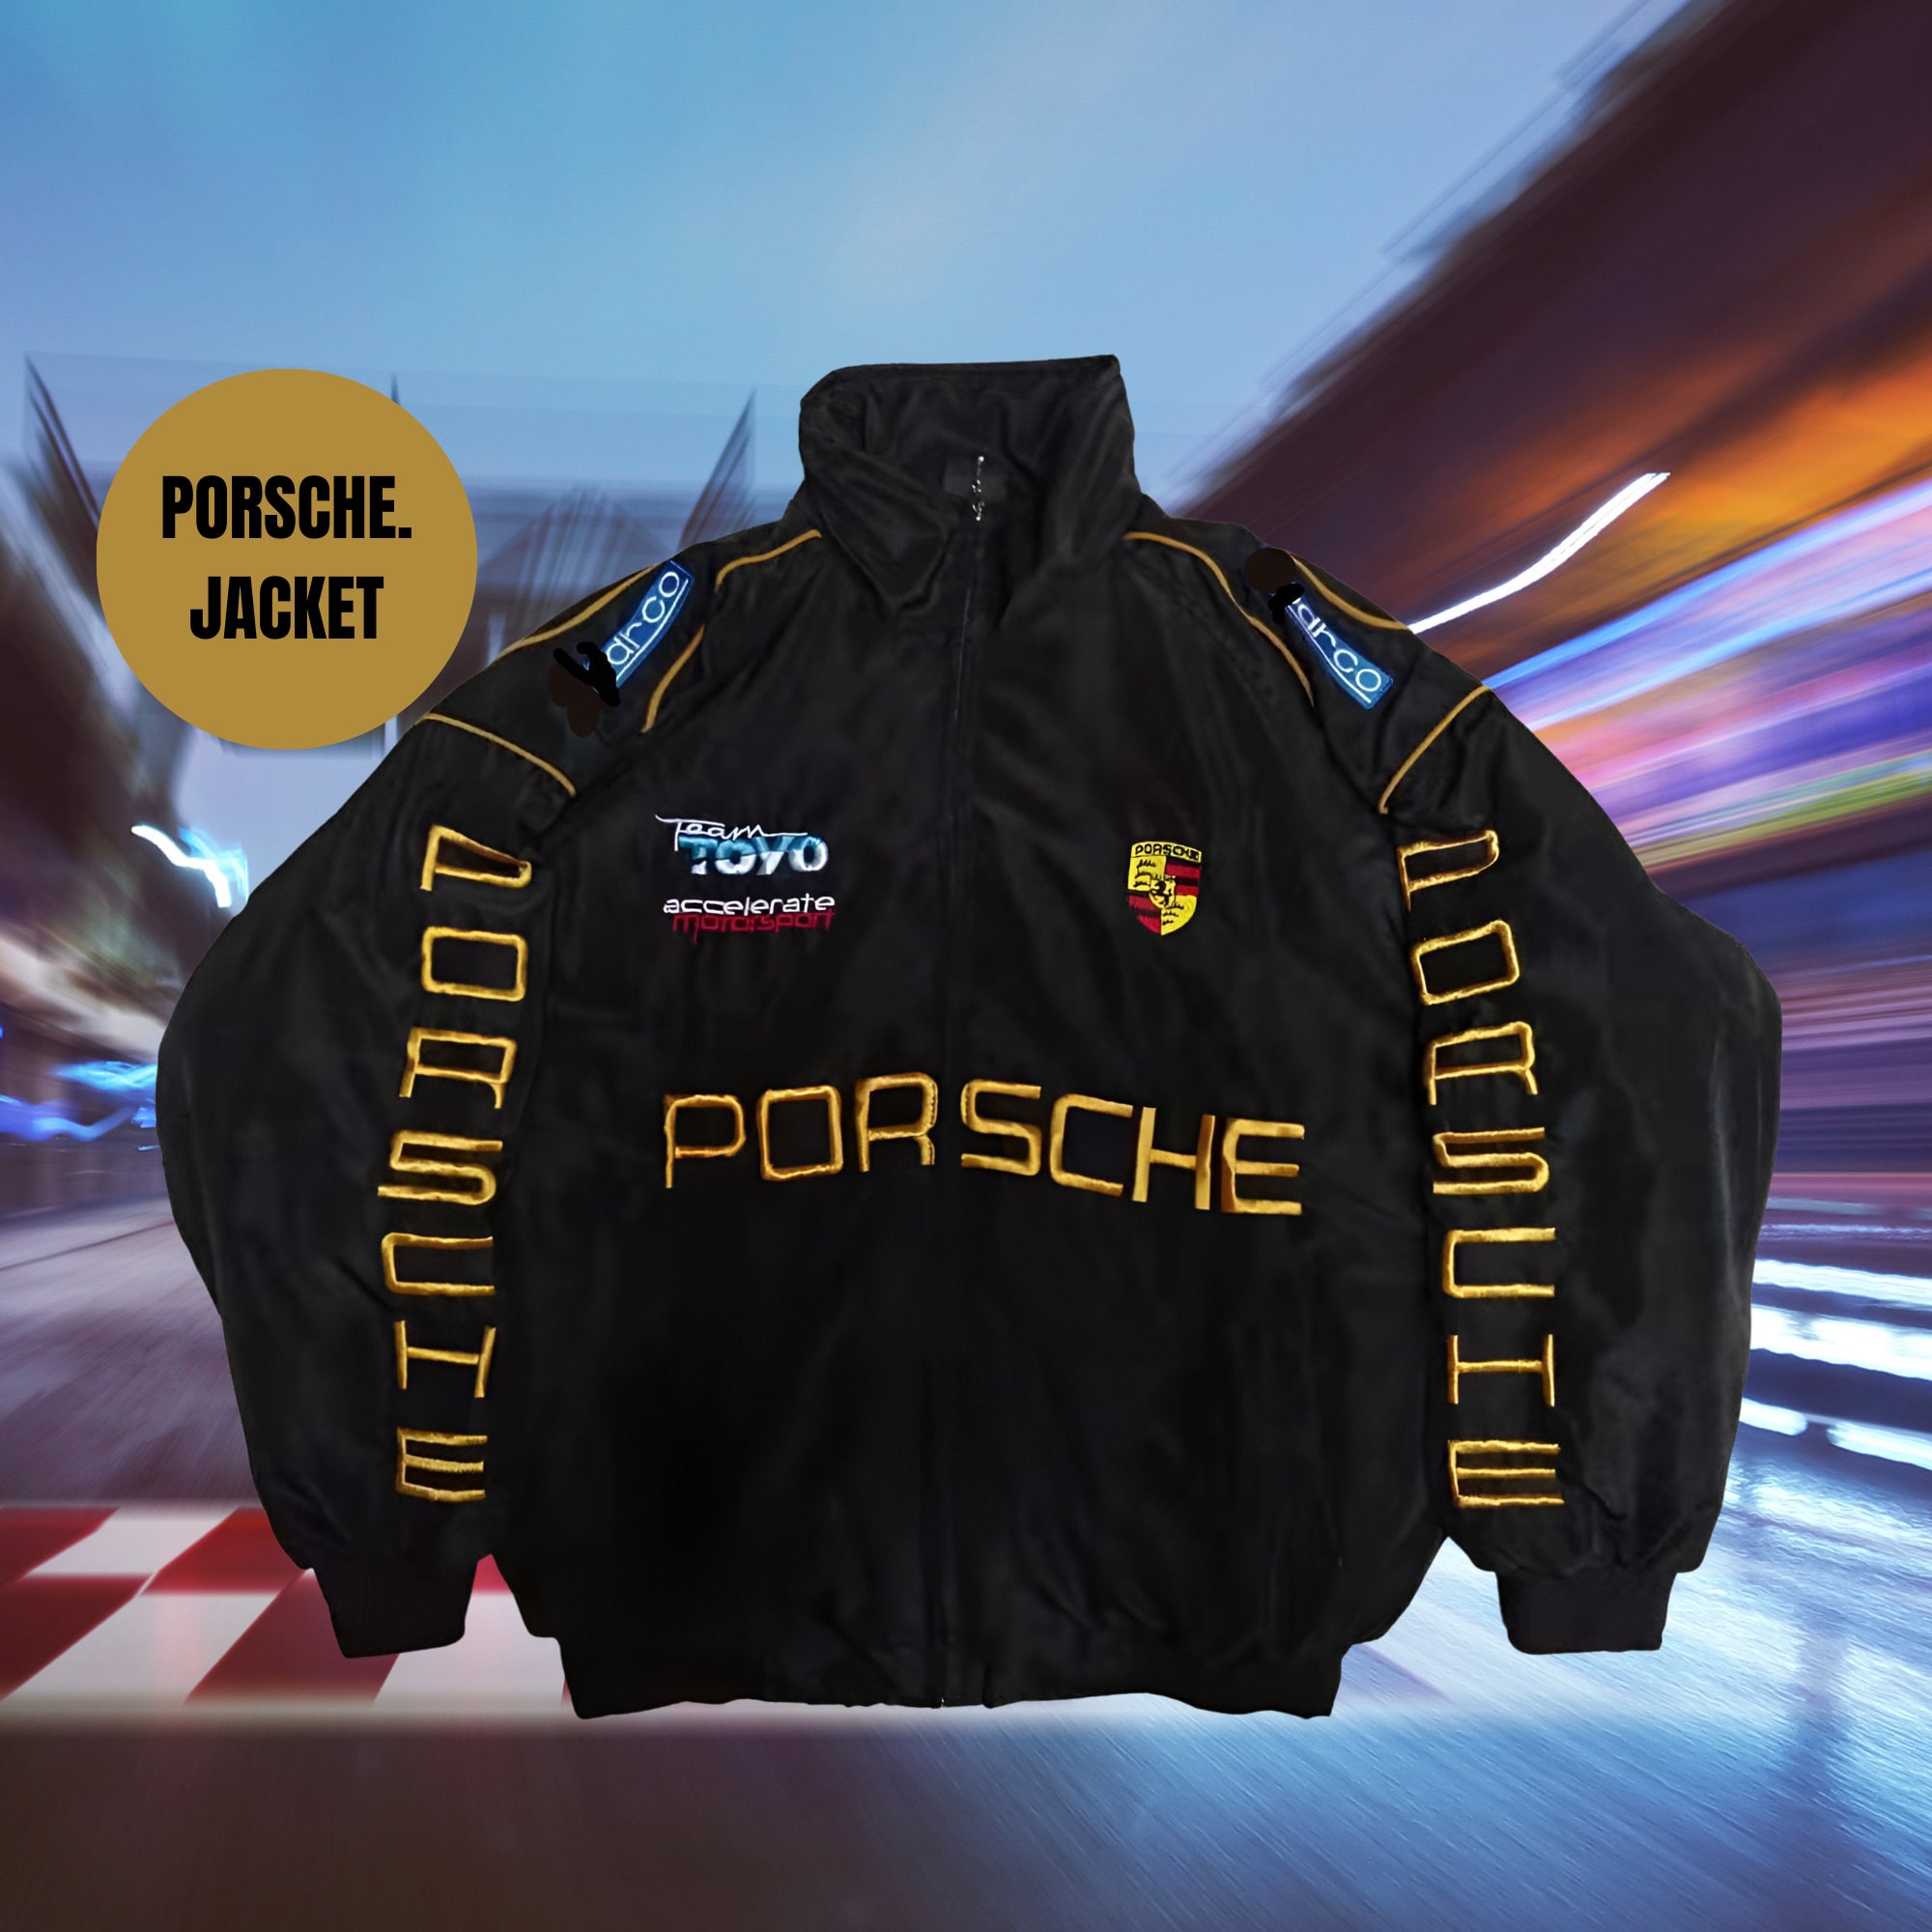 PORSCHE old track jacket